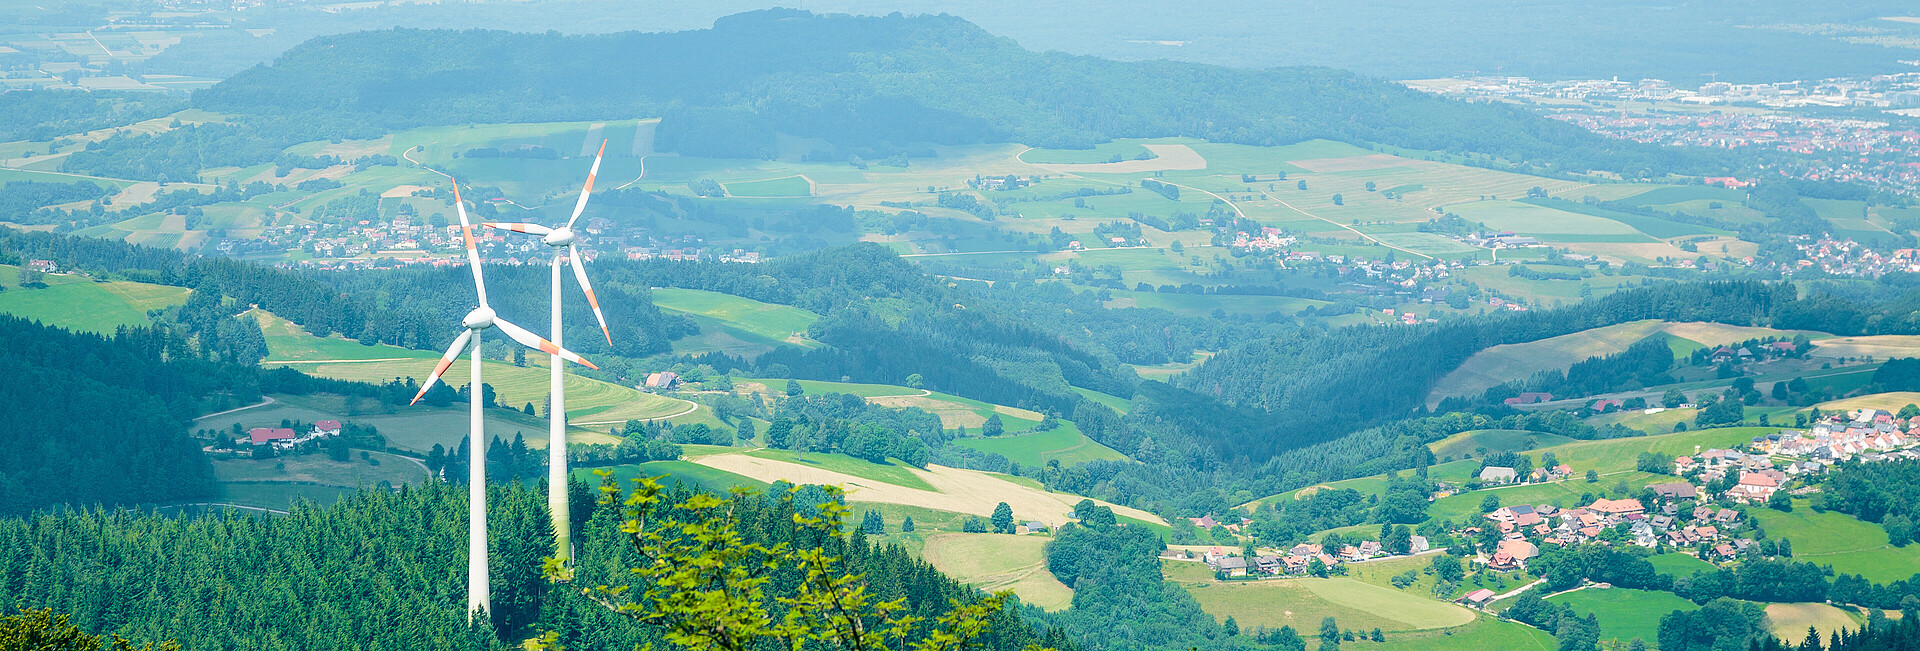 Man blickt von oben auf zwei Windenergieanlagen, die im Wald auf dem Berg Schauinsland stehen.